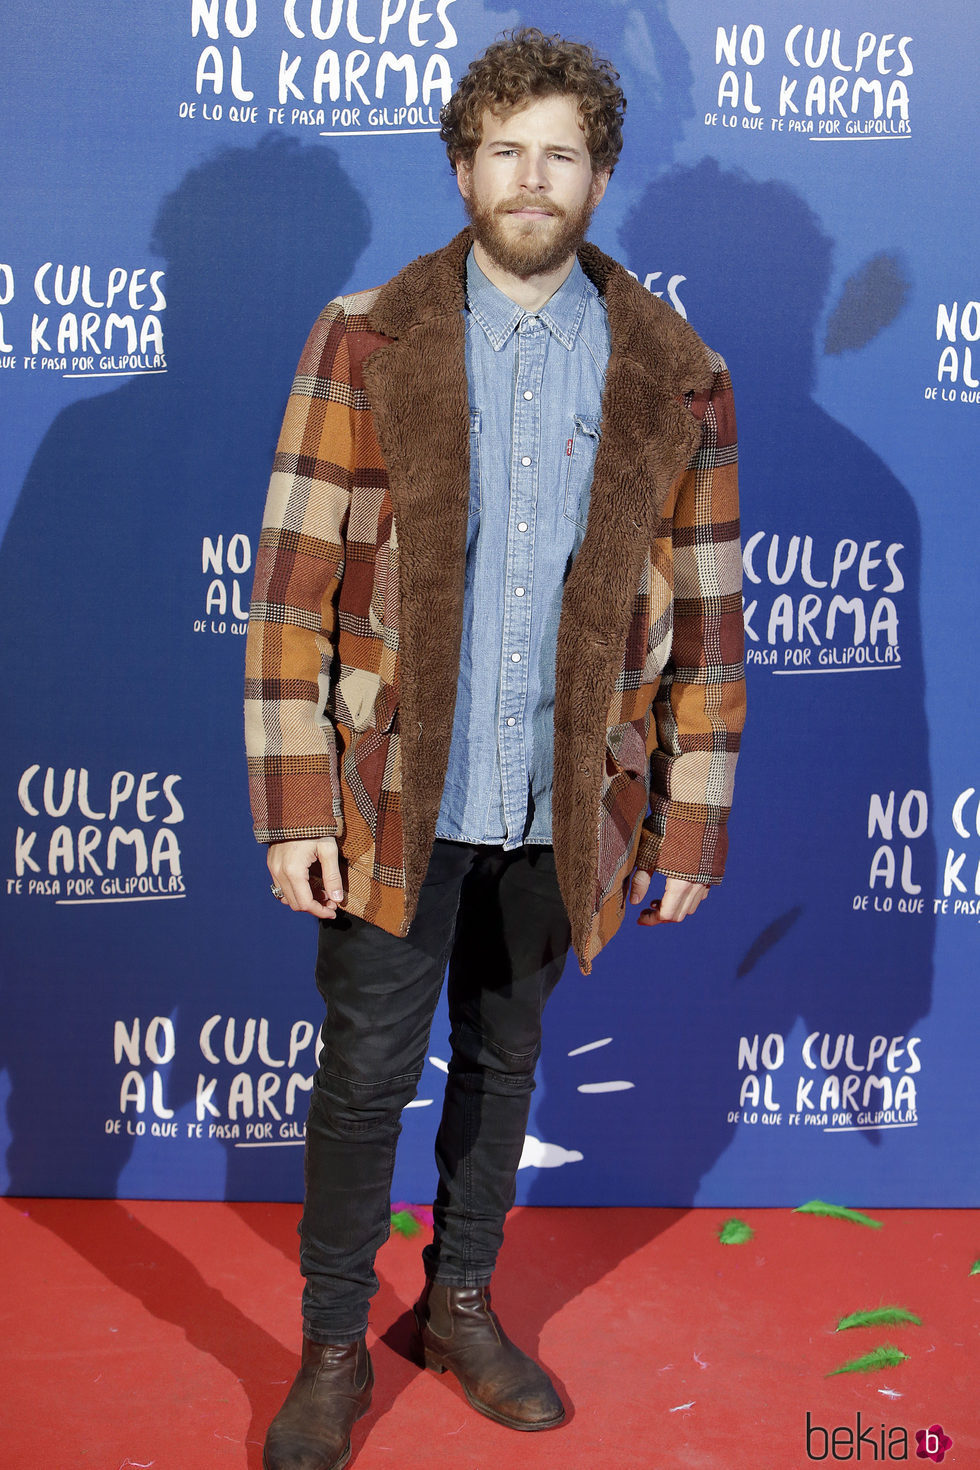 Álvaro Cervantes durante la premiere de la película 'No culpes al karma de lo que te pasa por gilipollas'